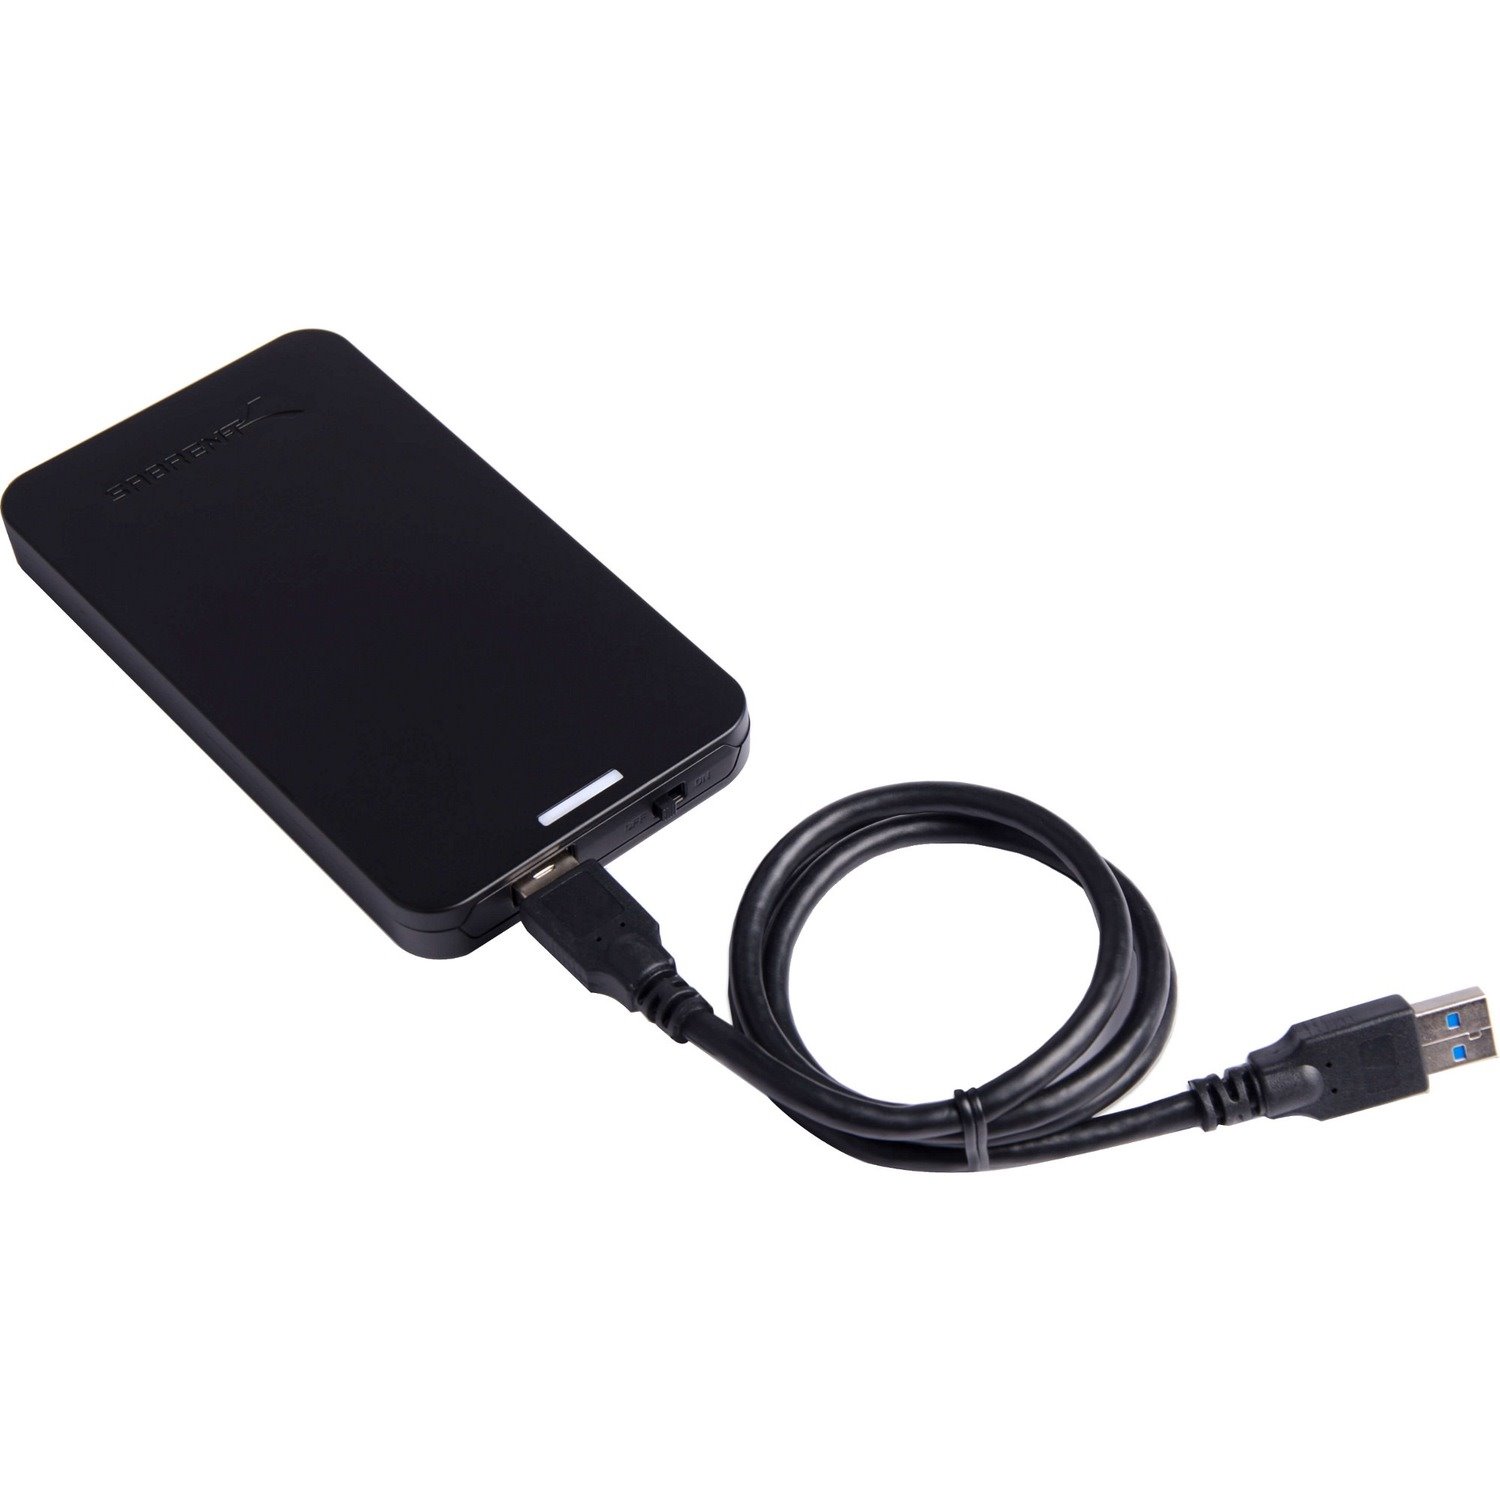 Sabrent EC-UASP Drive Enclosure - USB 3.0 Host Interface - UASP Support External - Black